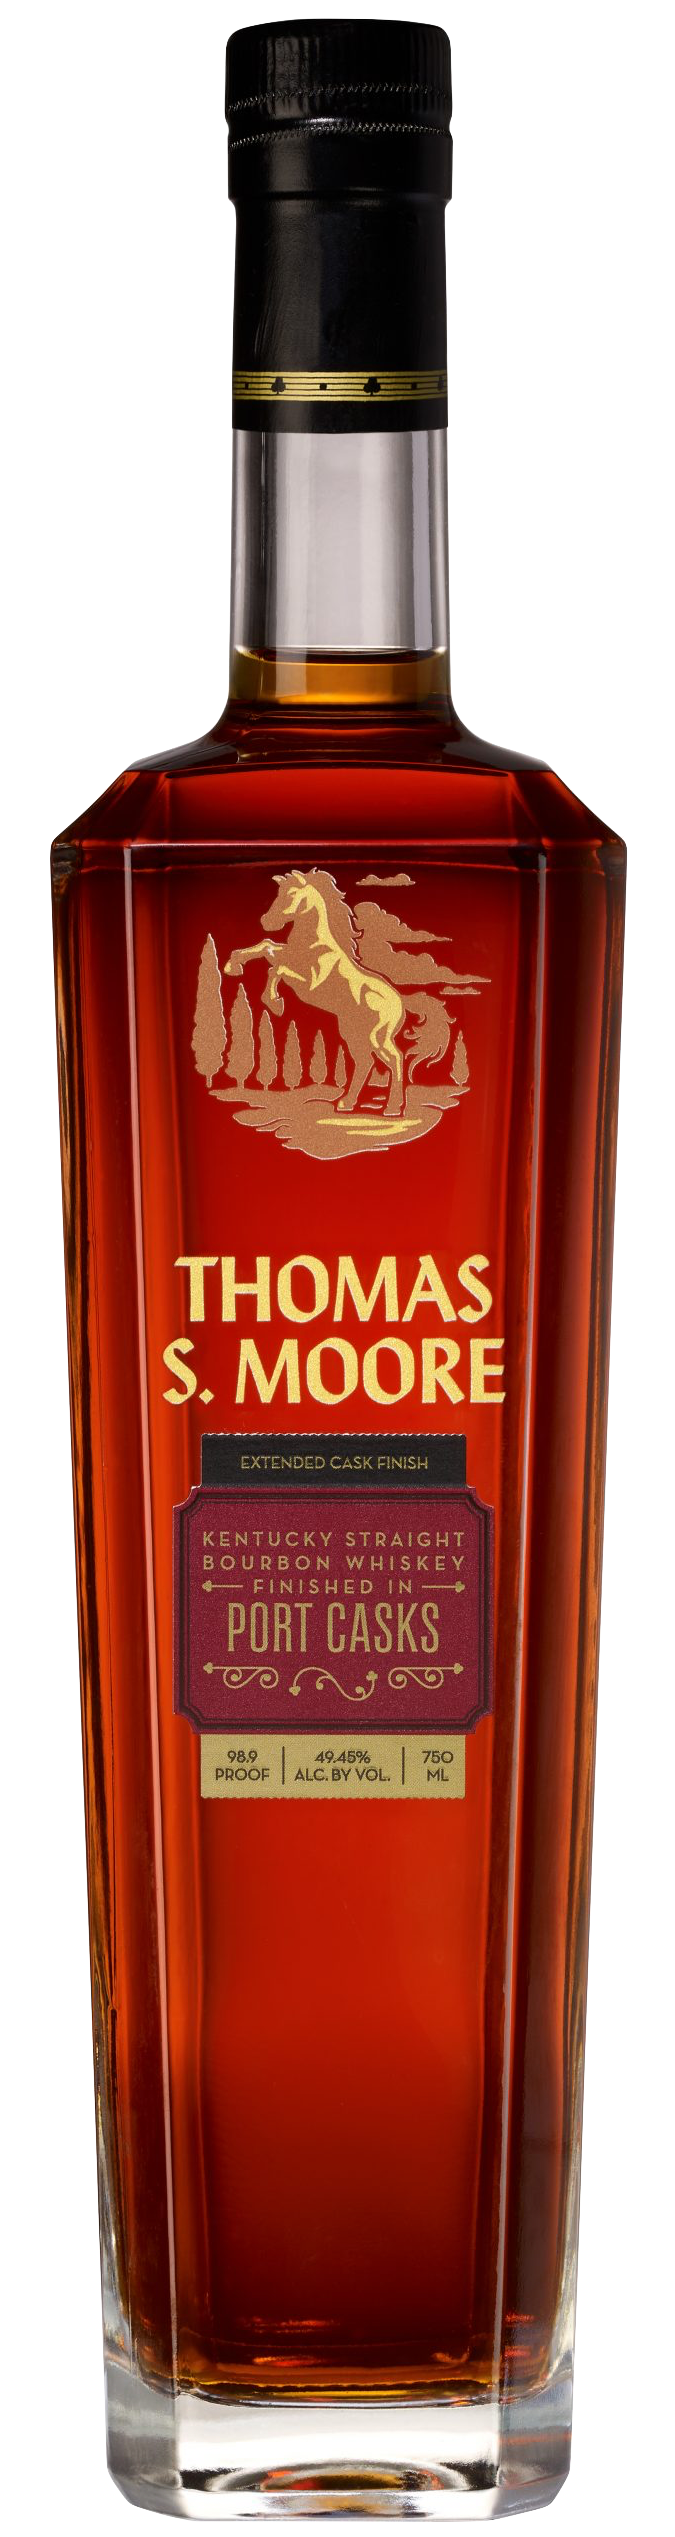 Thomas S. Moore Port Cask Finish Bourbon Review